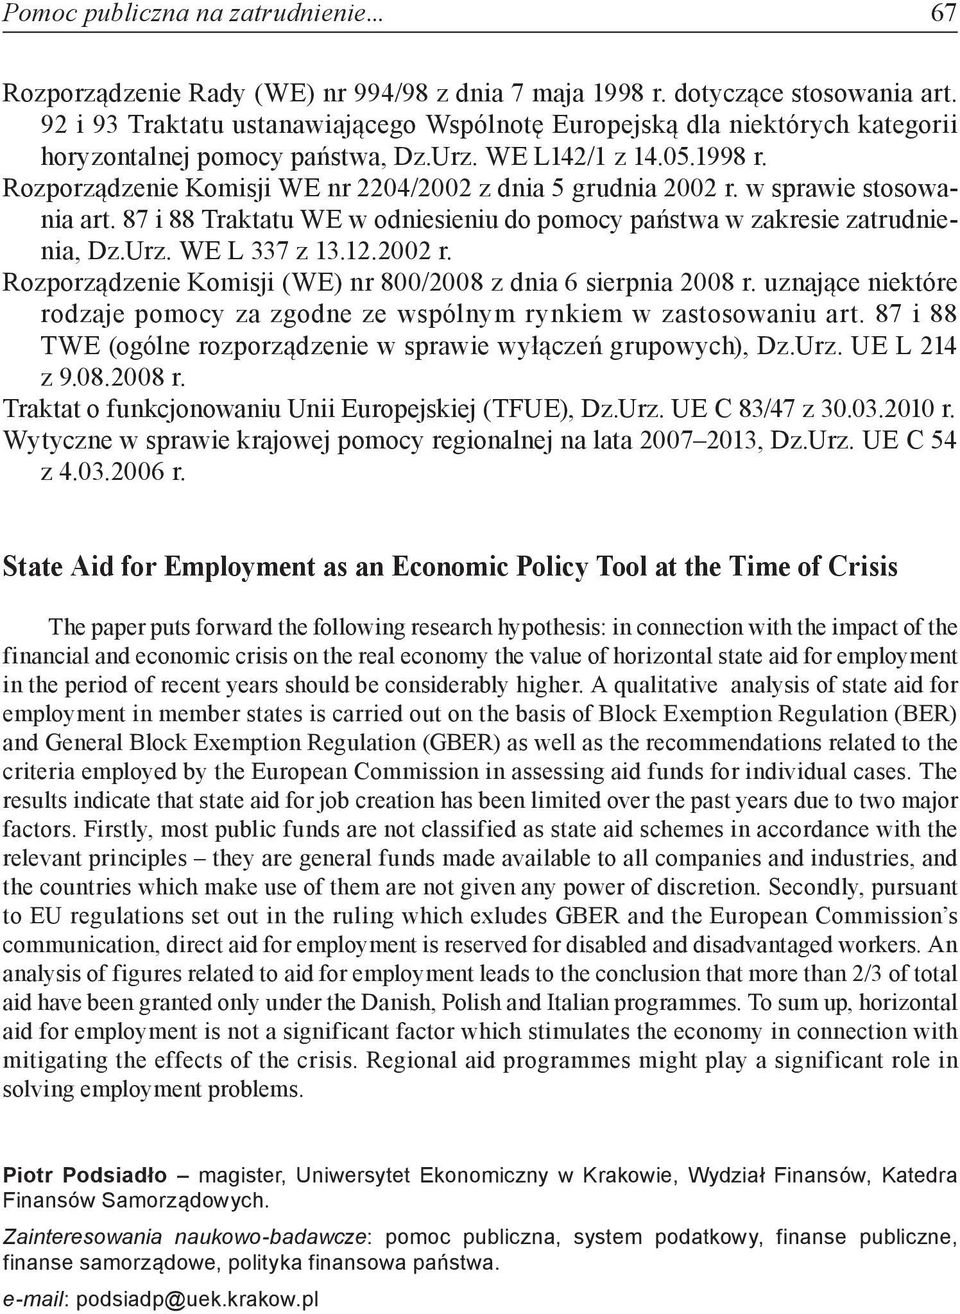 Rozporządzenie Komisji WE nr 2204/2002 z dnia 5 grudnia 2002 r. w sprawie stosowania art. 87 i 88 Traktatu WE w odniesieniu do pomocy państwa w zakresie zatrudnienia, Dz.Urz. WE L 337 z 13.12.2002 r. Rozporządzenie Komisji (WE) nr 800/2008 z dnia 6 sierpnia 2008 r.